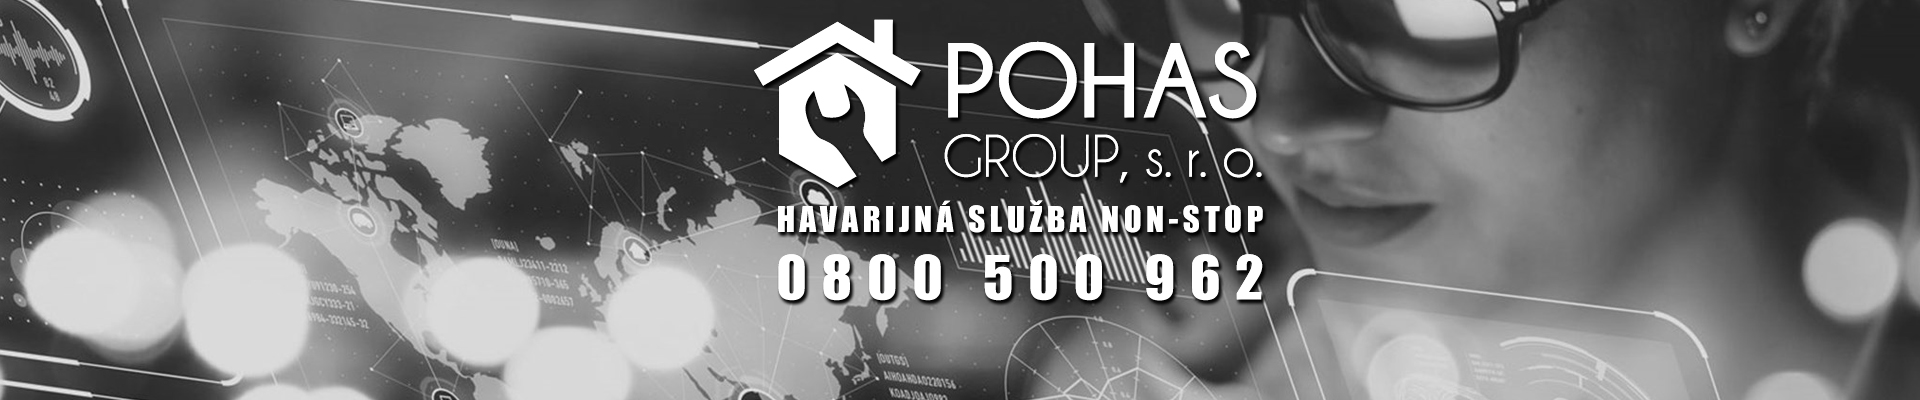 Pohas Group Kontakt